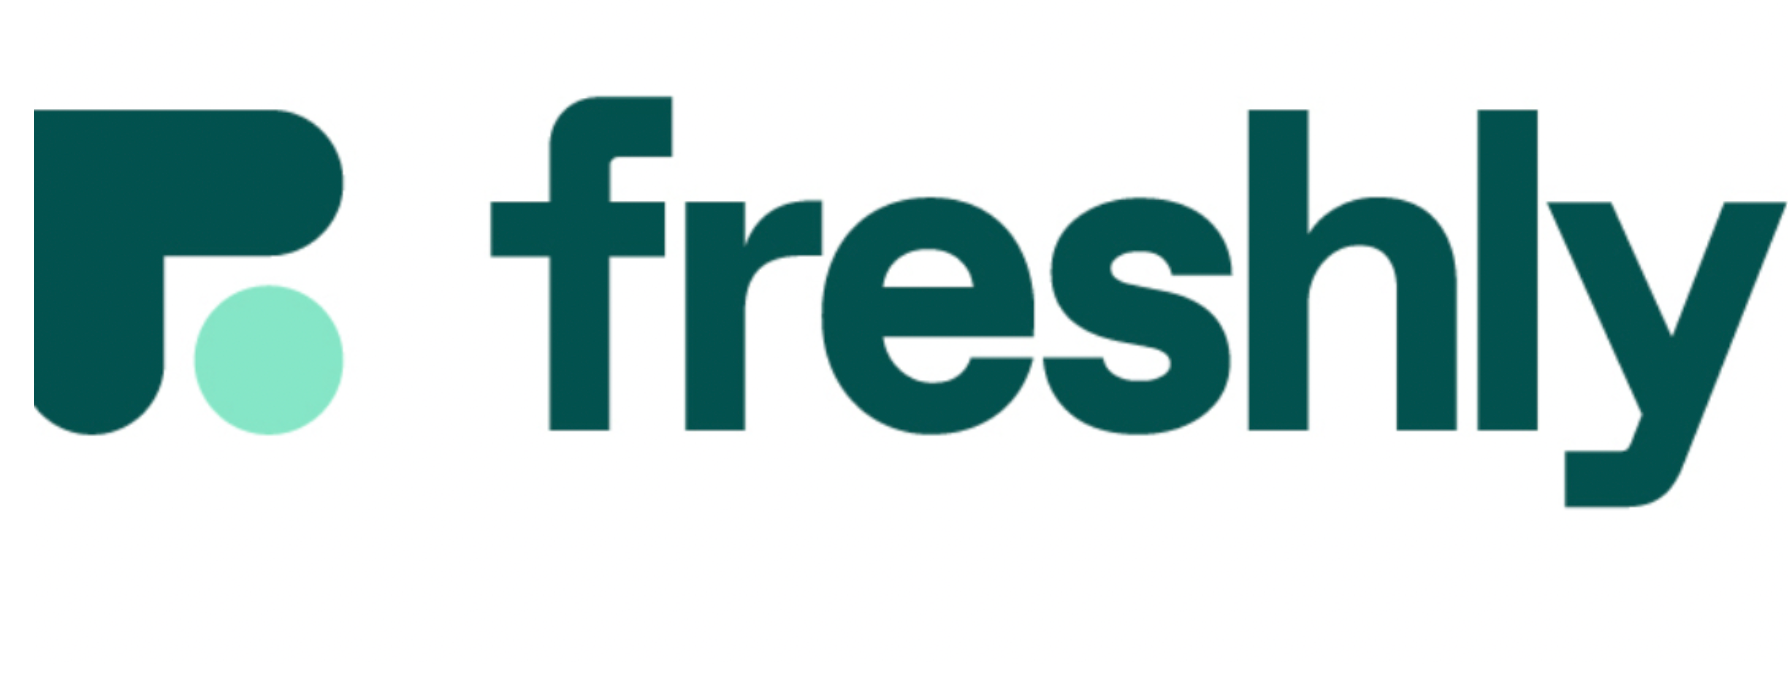 Freshly logo